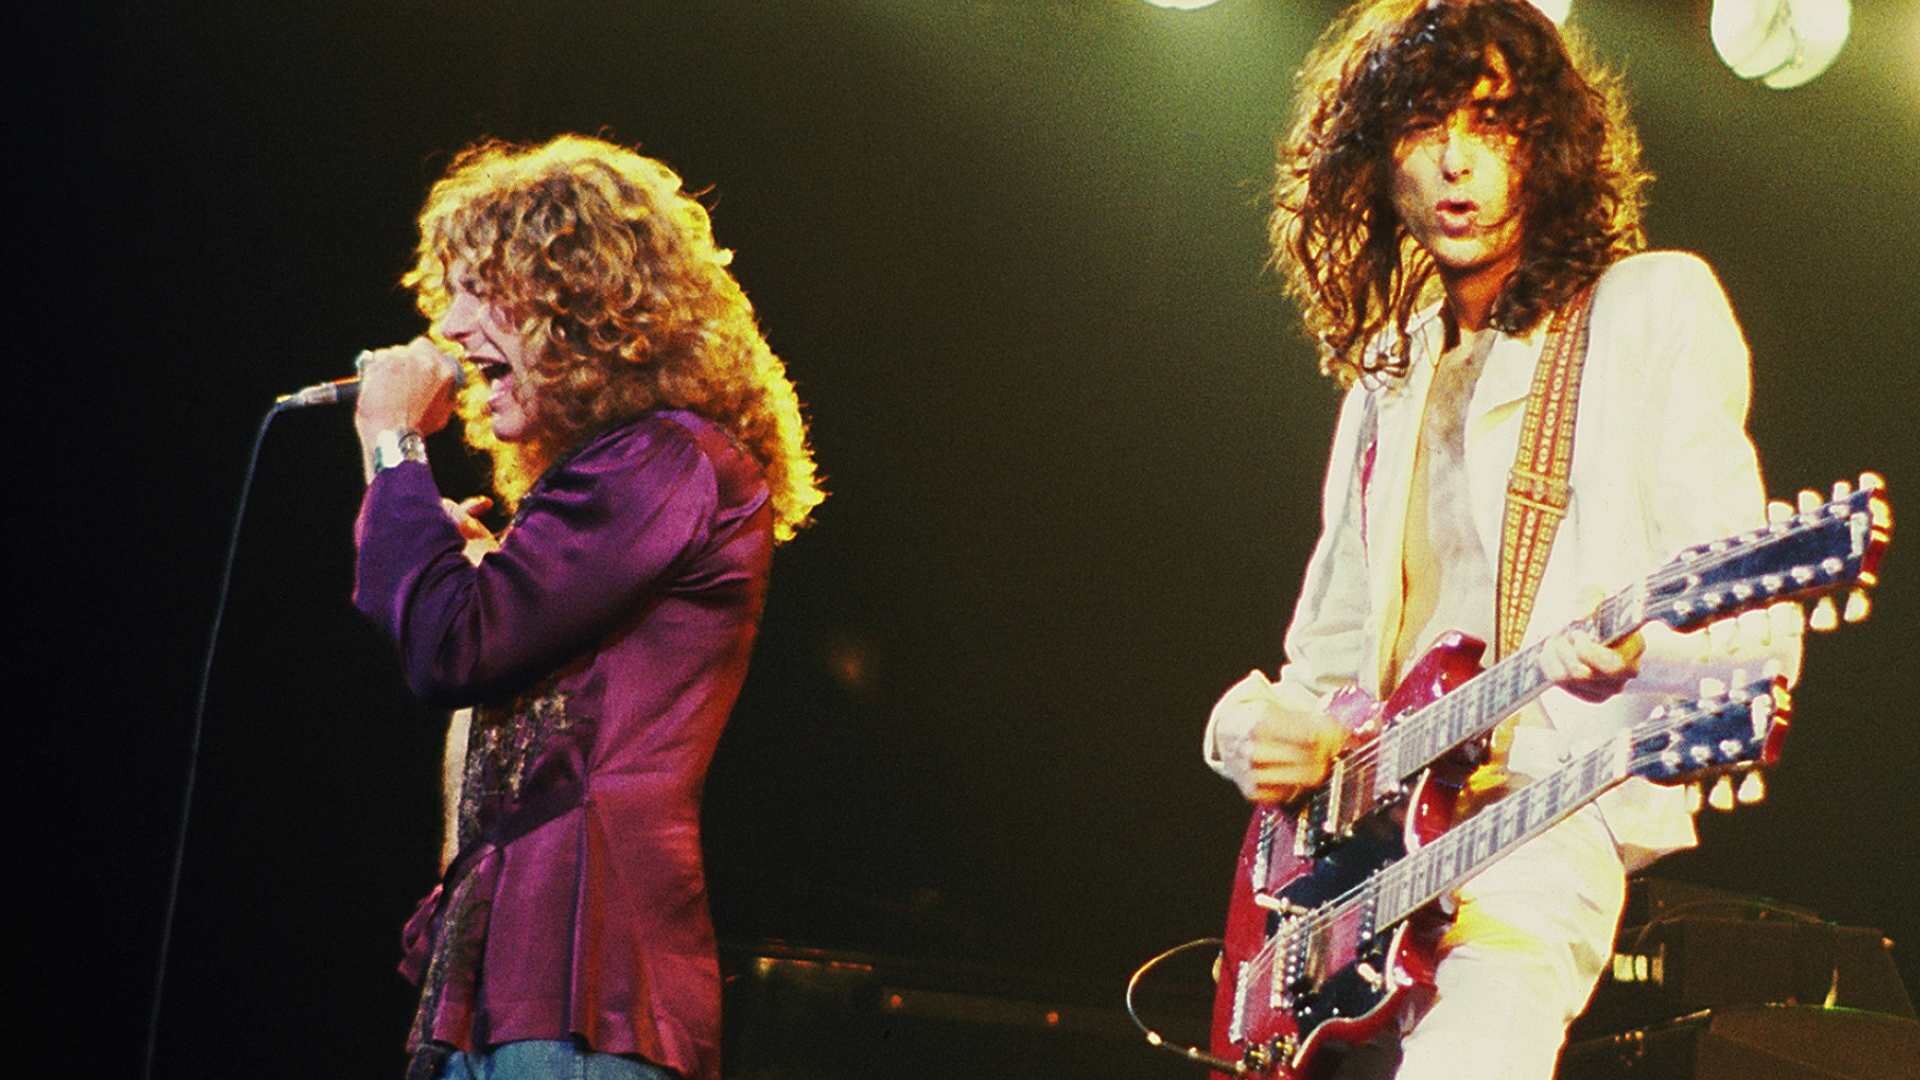 Ilustracja przedstawia zespół Led Zeppelin - brytyjska grupa założona w Londynie, będąca jednym z pionierów hard rocka. Mężczyźni znajdują się na scenie podczas koncertu. Jeden z nich śpiewa, natomiast drugi gra na gitarze. Mężczyźni mają długie, kręcone włosy. Wokalista ma fioletową marynarkę, drugi białą.